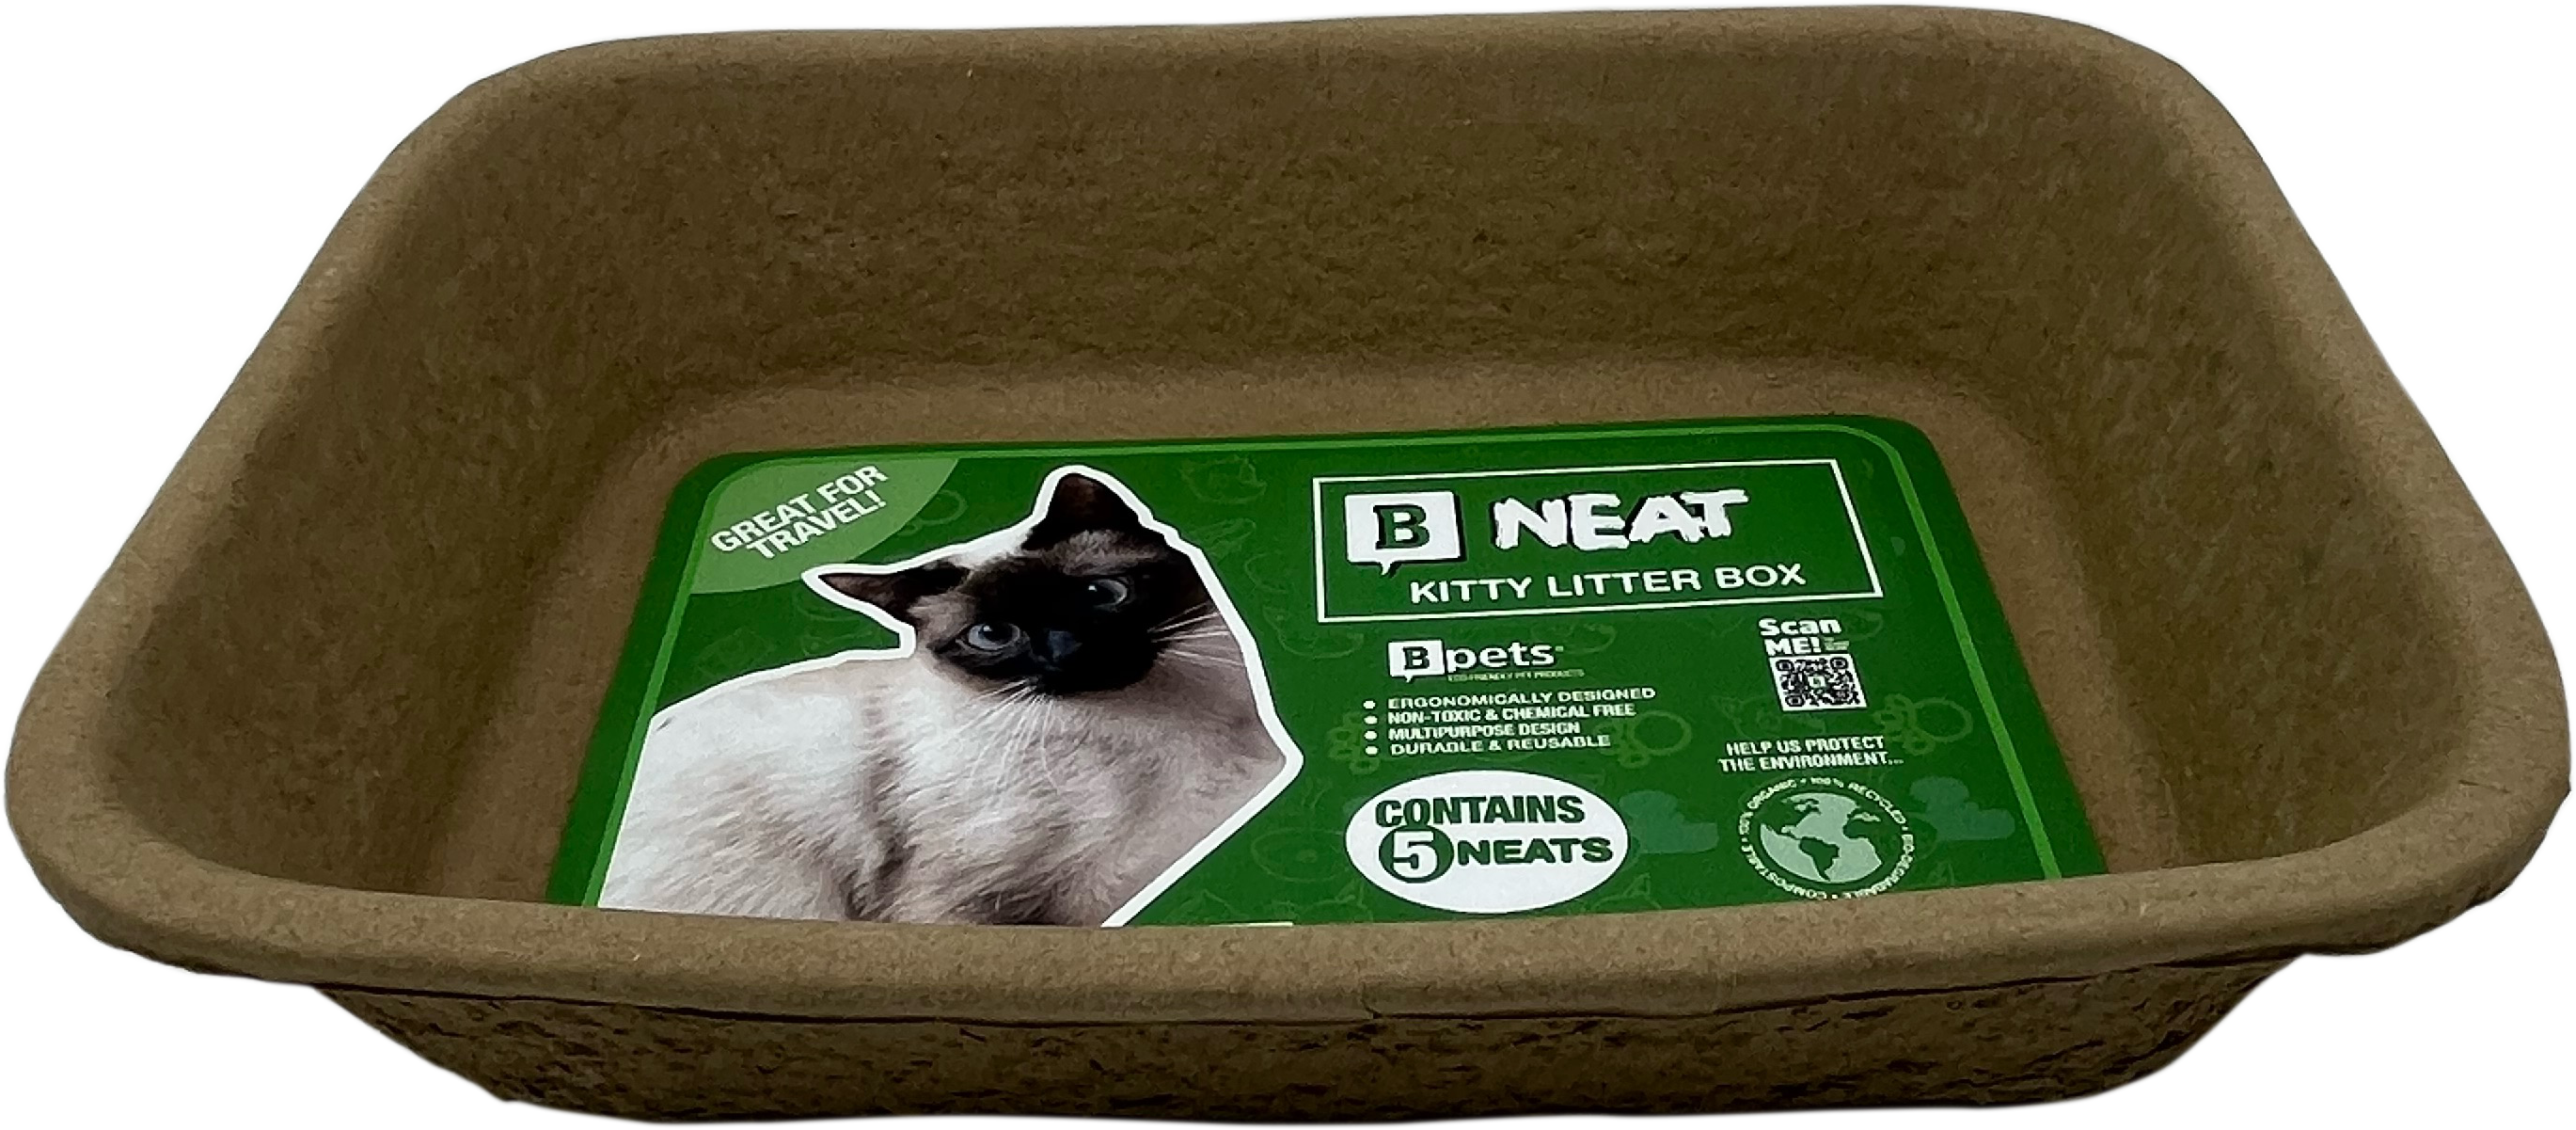 B Neat - Kitty Litter box